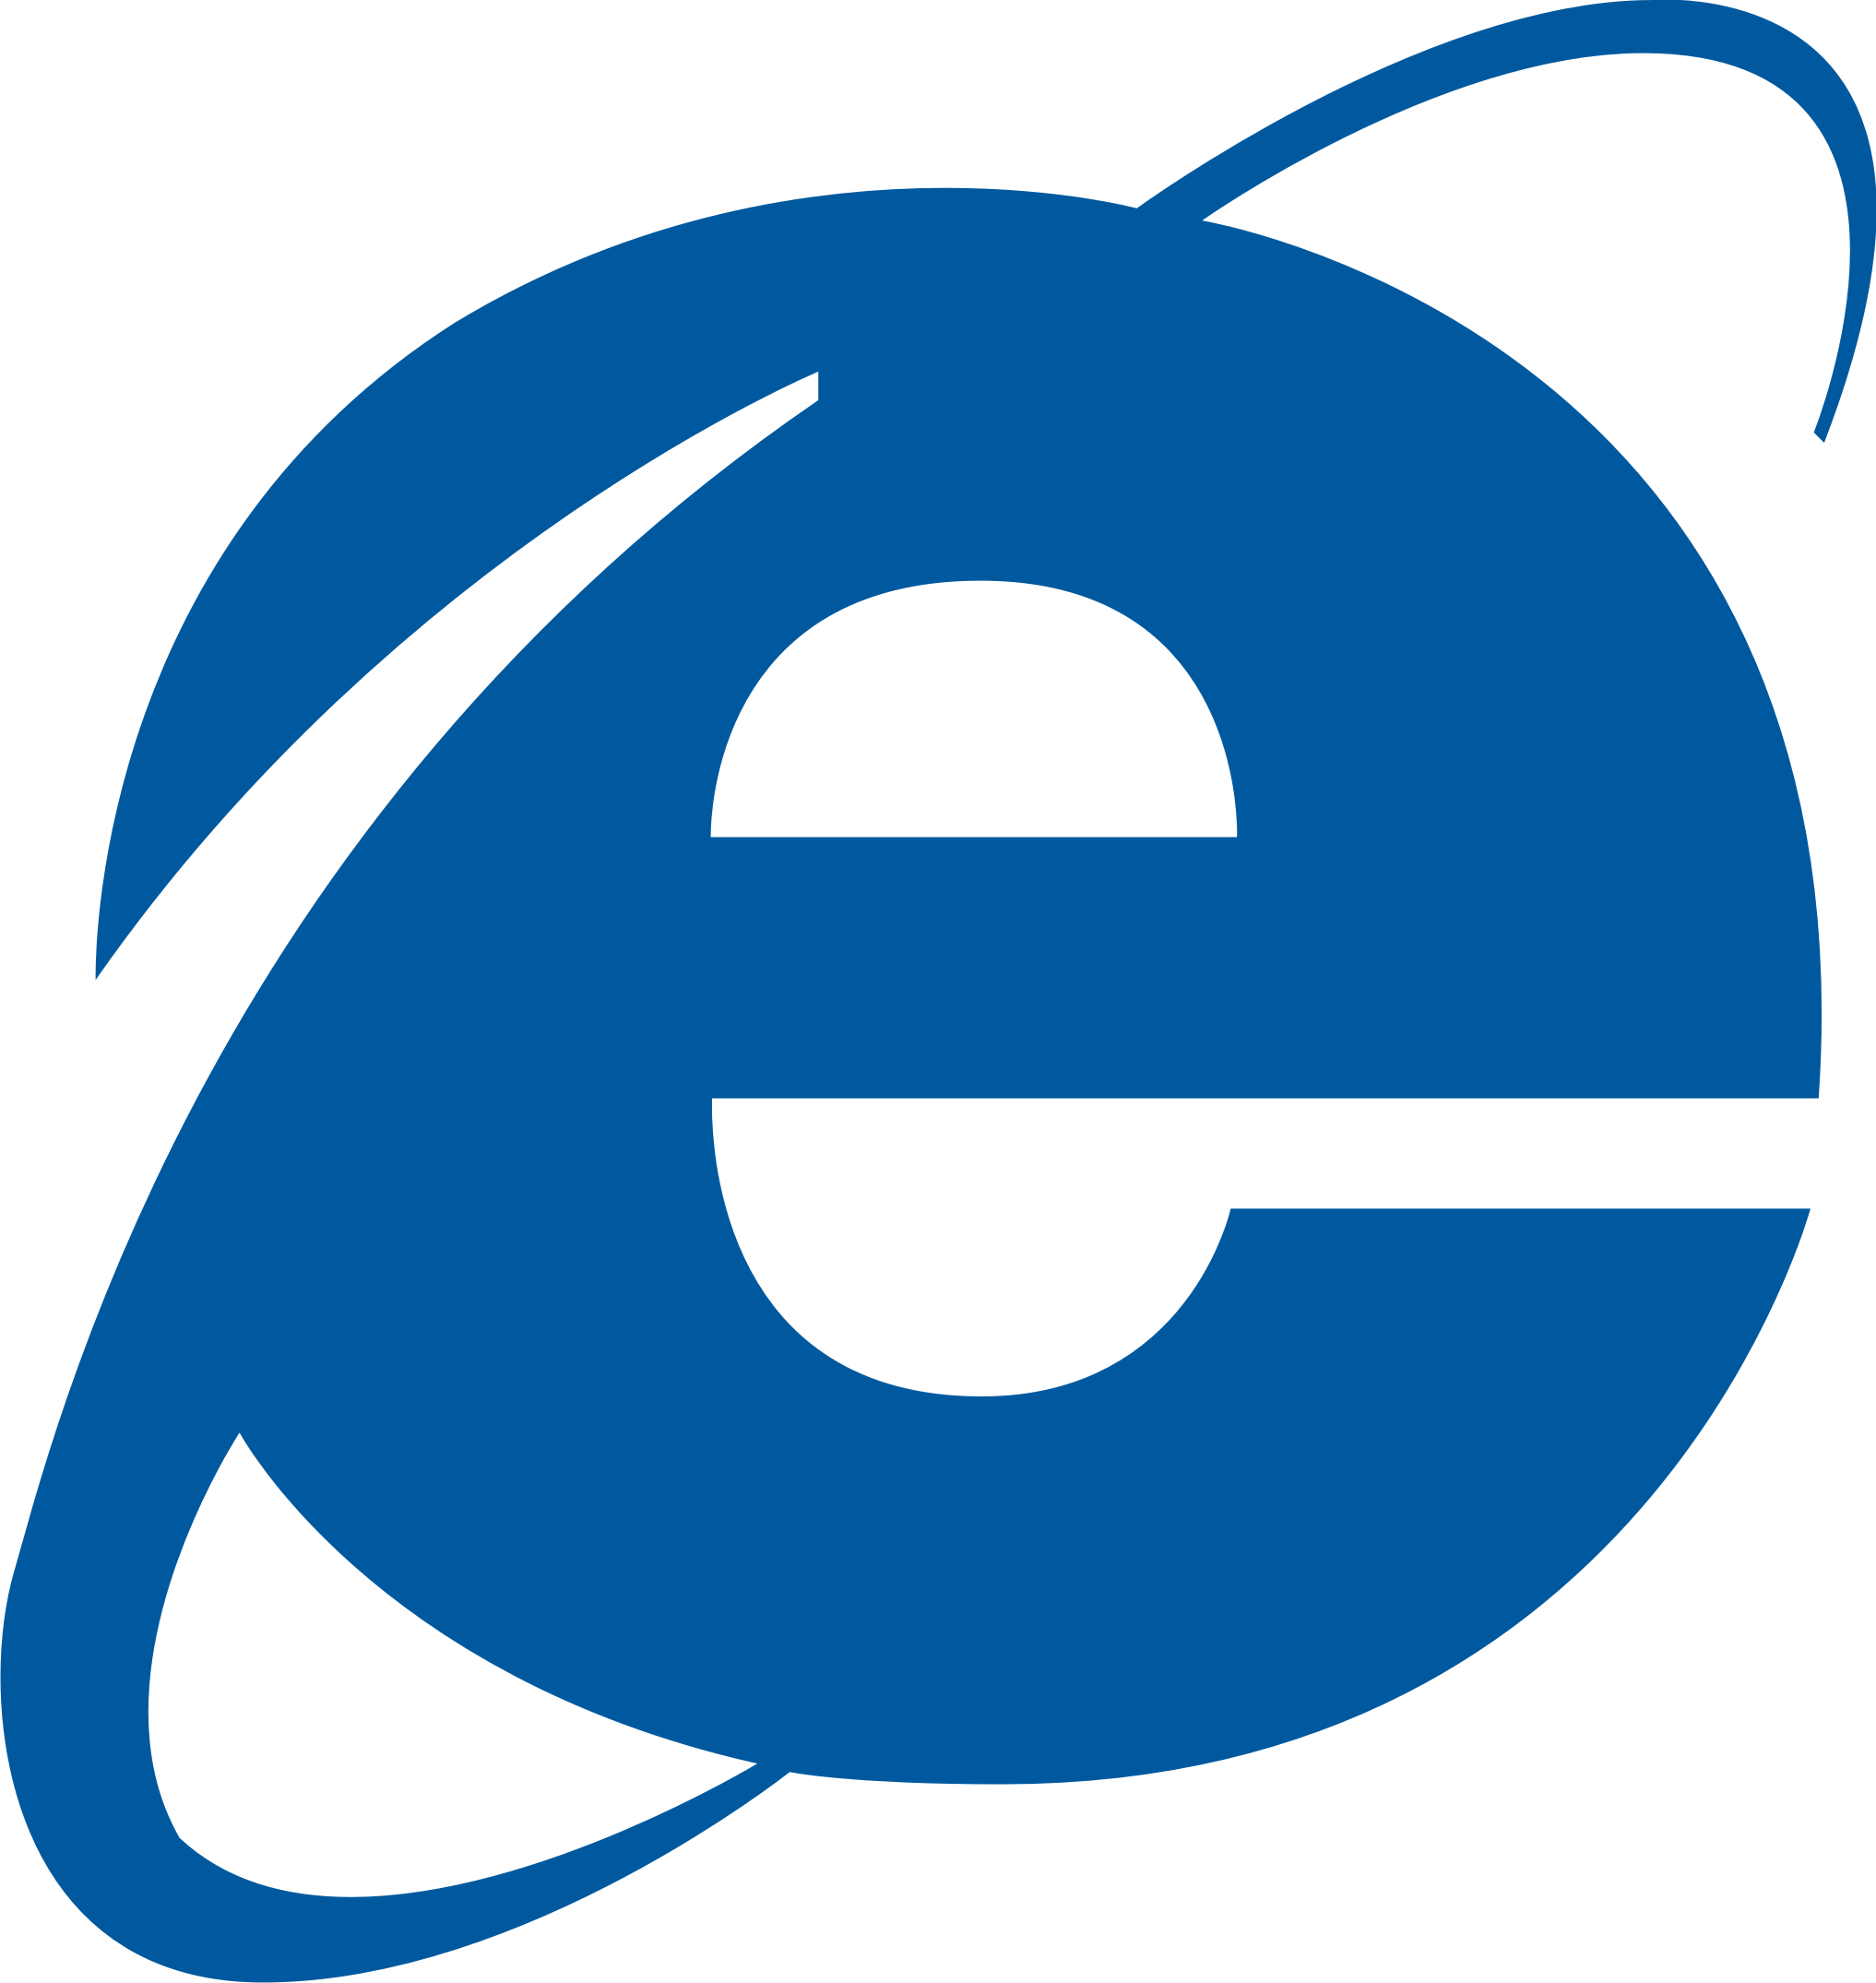 Internet Explorer logo PNG images free download